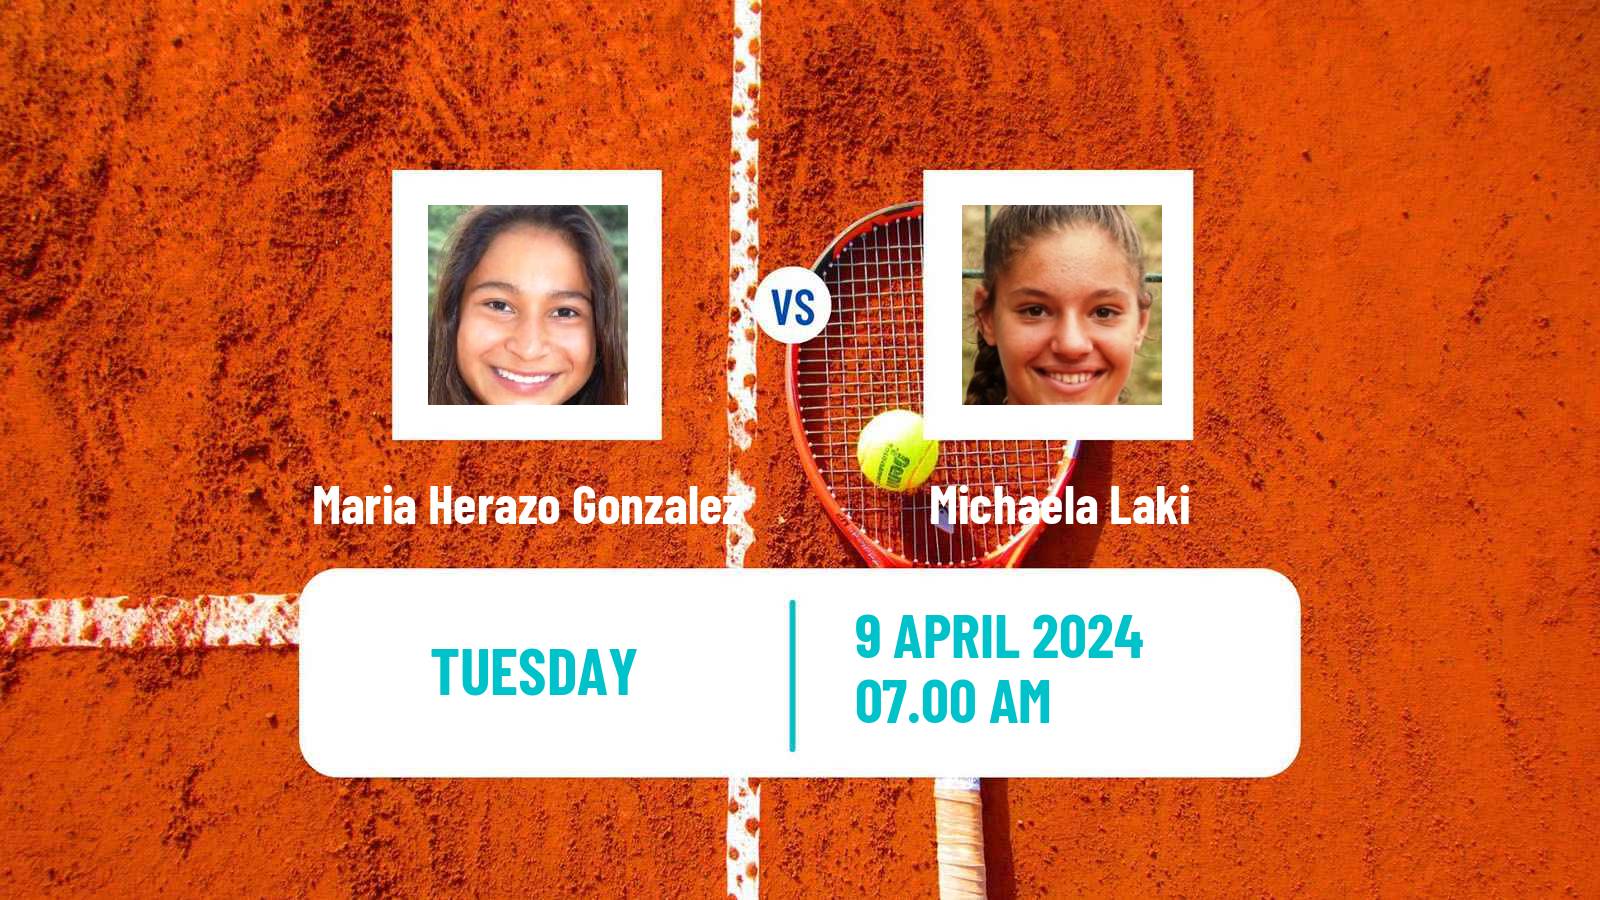 Tennis ITF W35 Hammamet 4 Women 2024 Maria Herazo Gonzalez - Michaela Laki